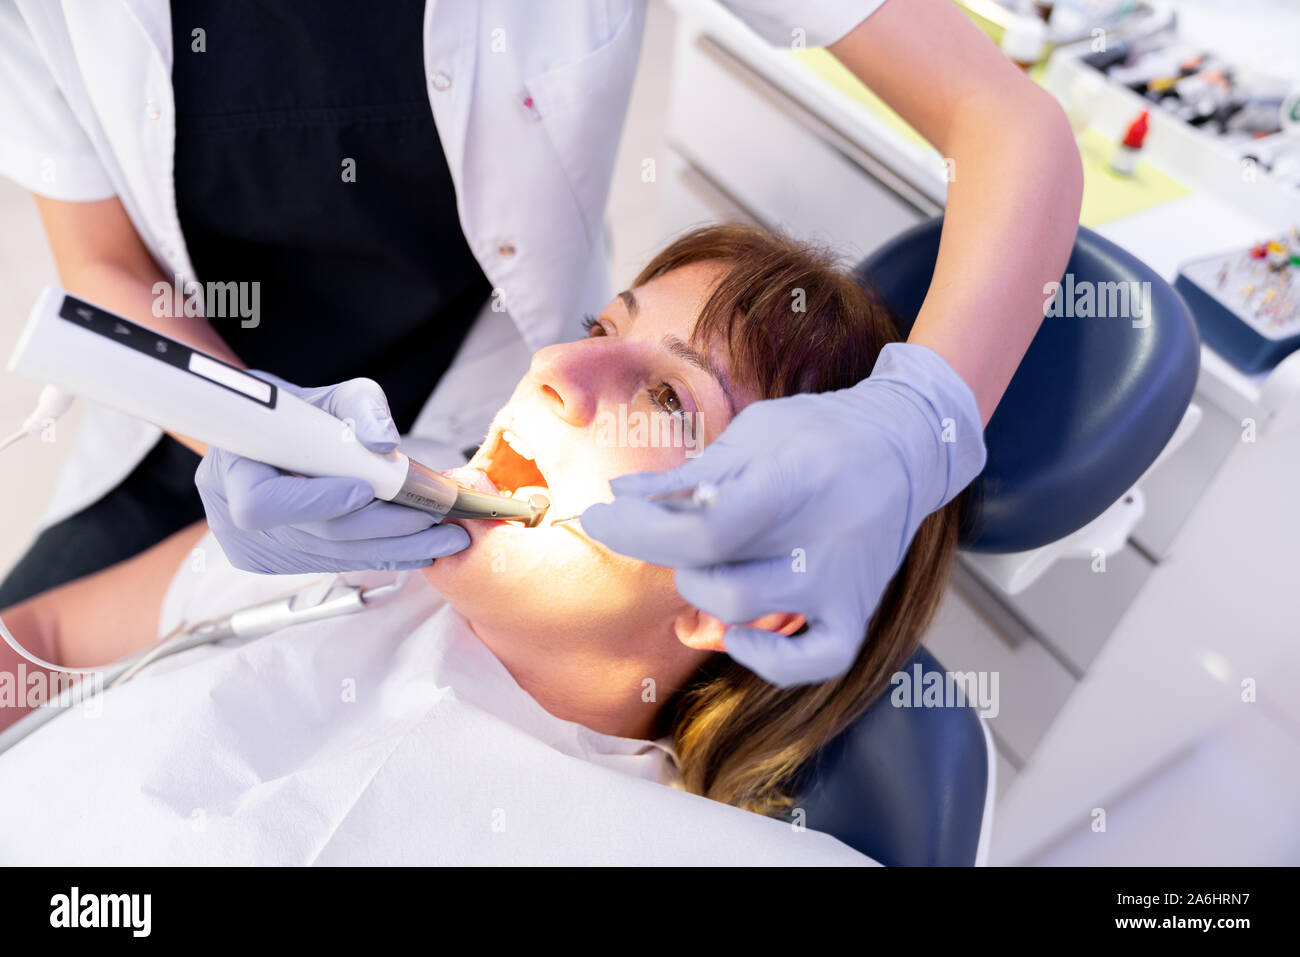 La donna è ottenere il trattamento dentale in una clinica dentale. Foto Stock